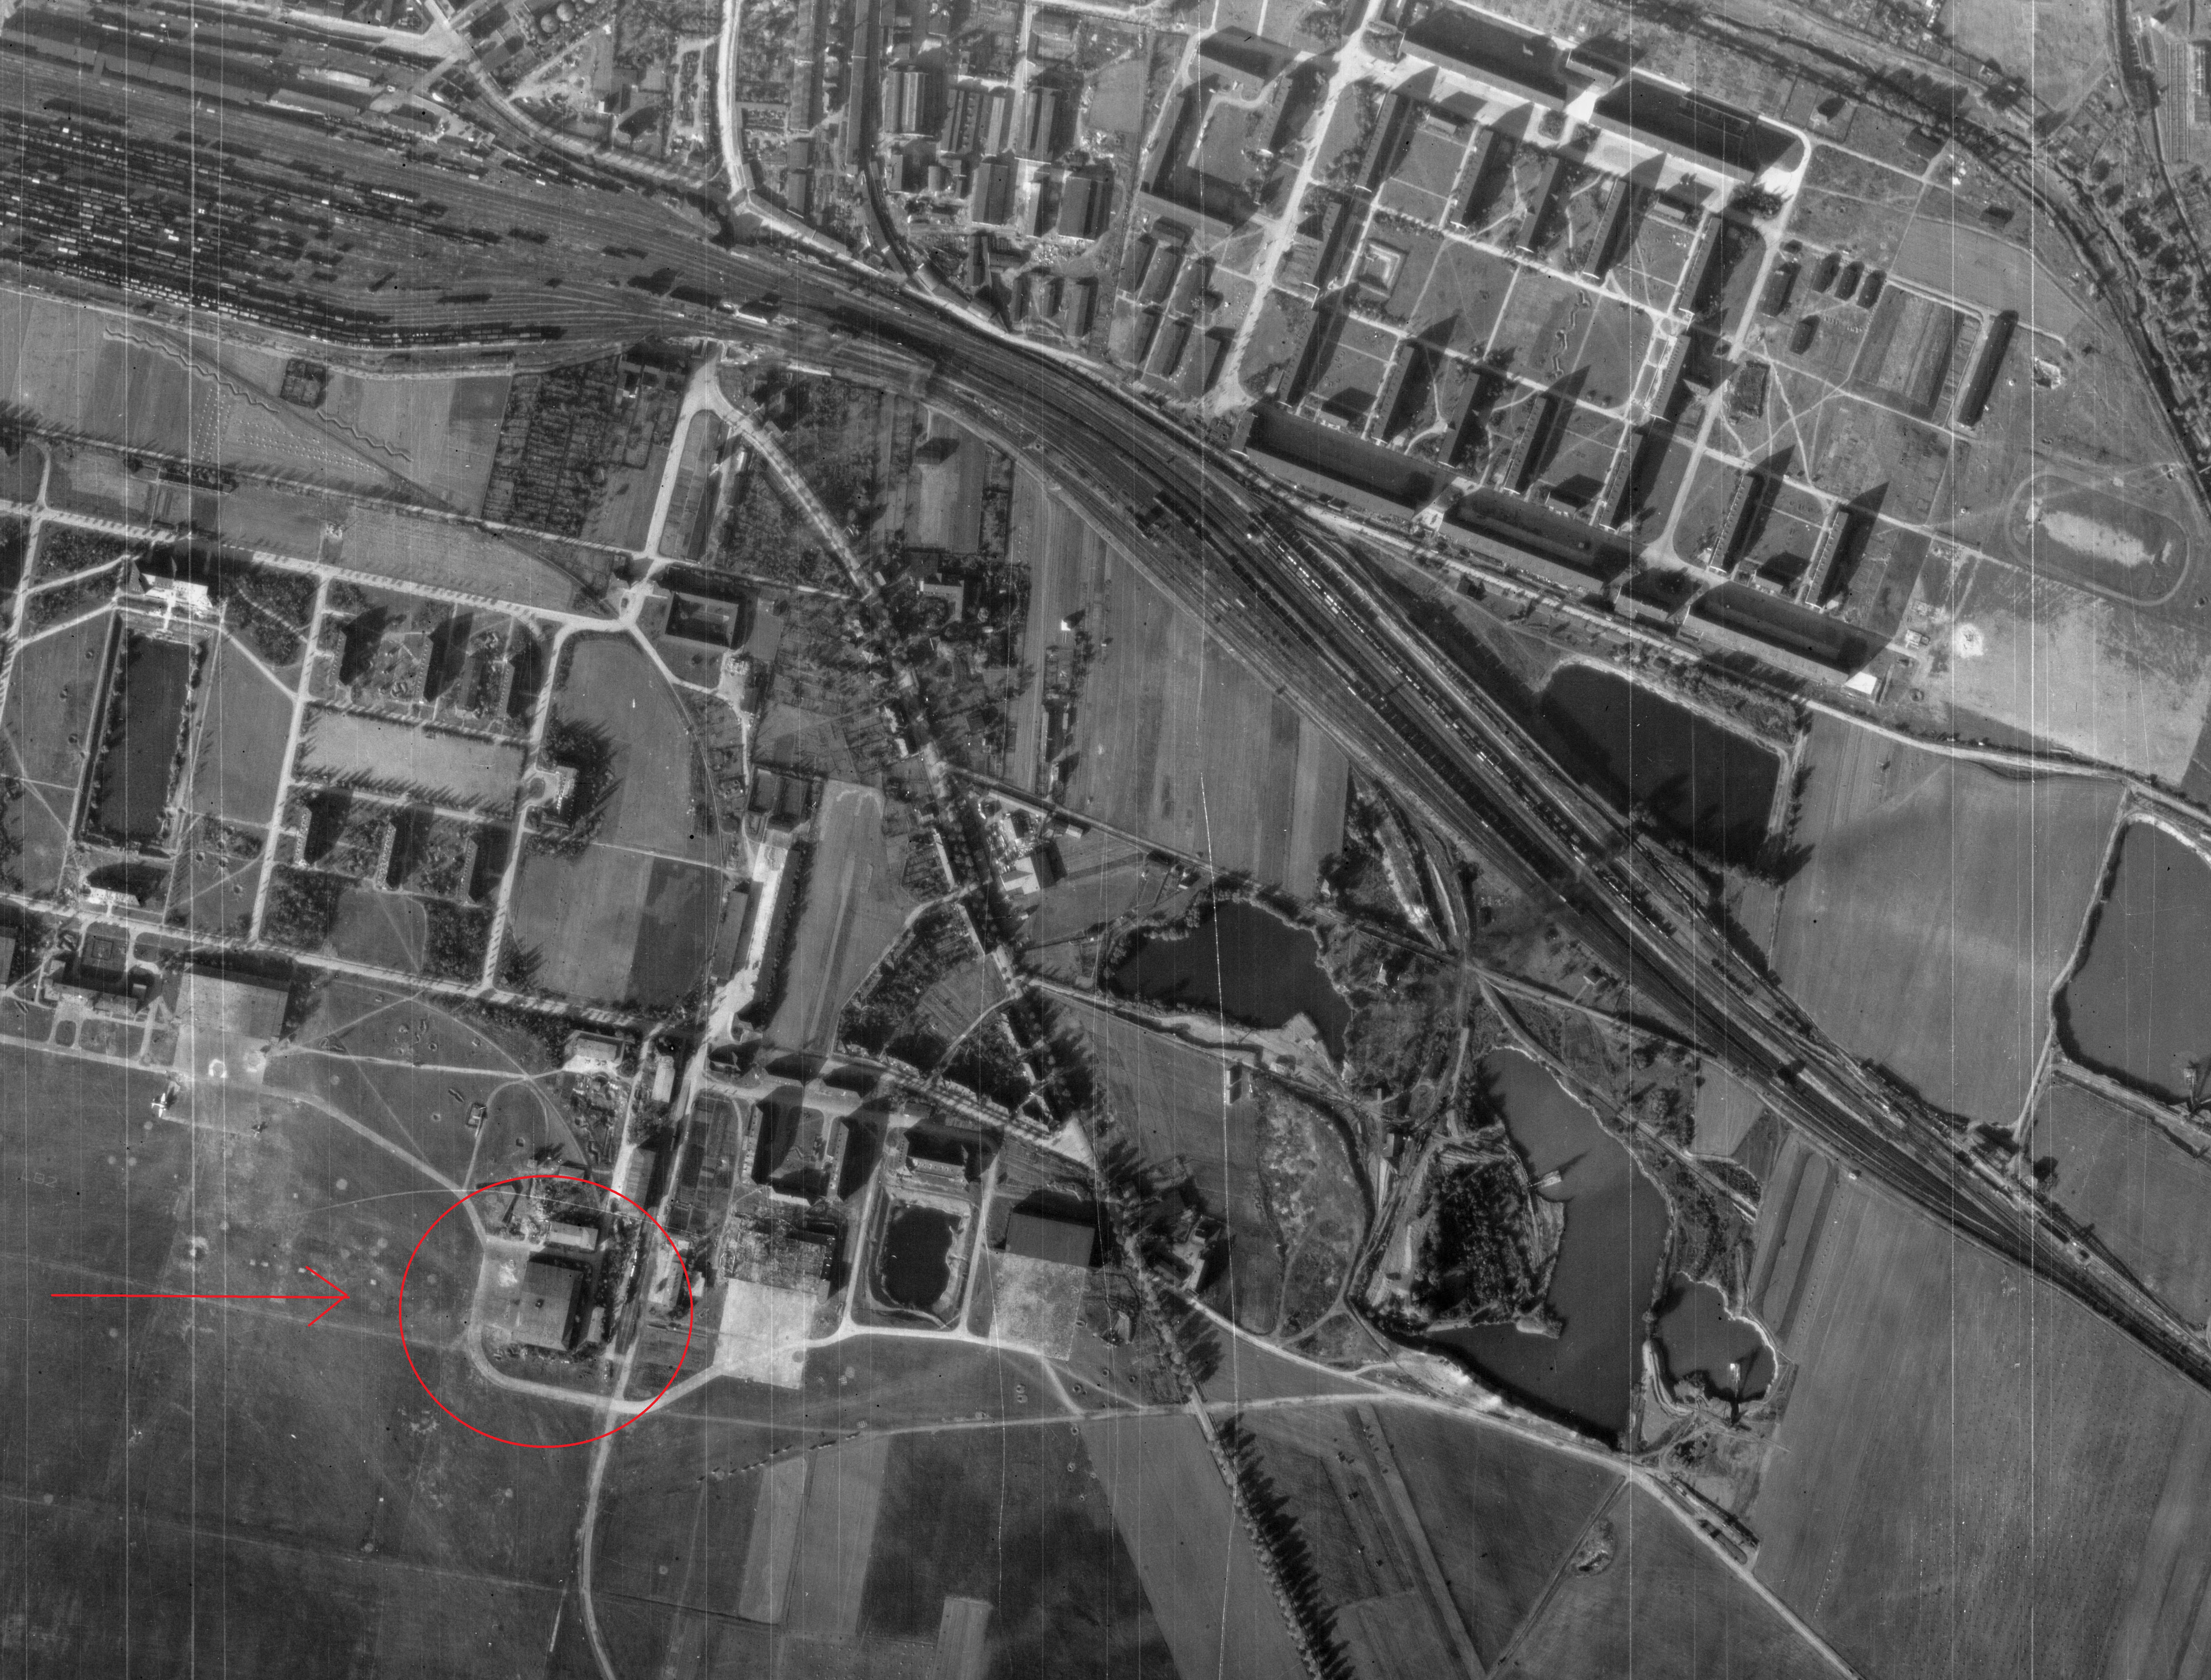 Fliegerhorst Nordhausen 1945